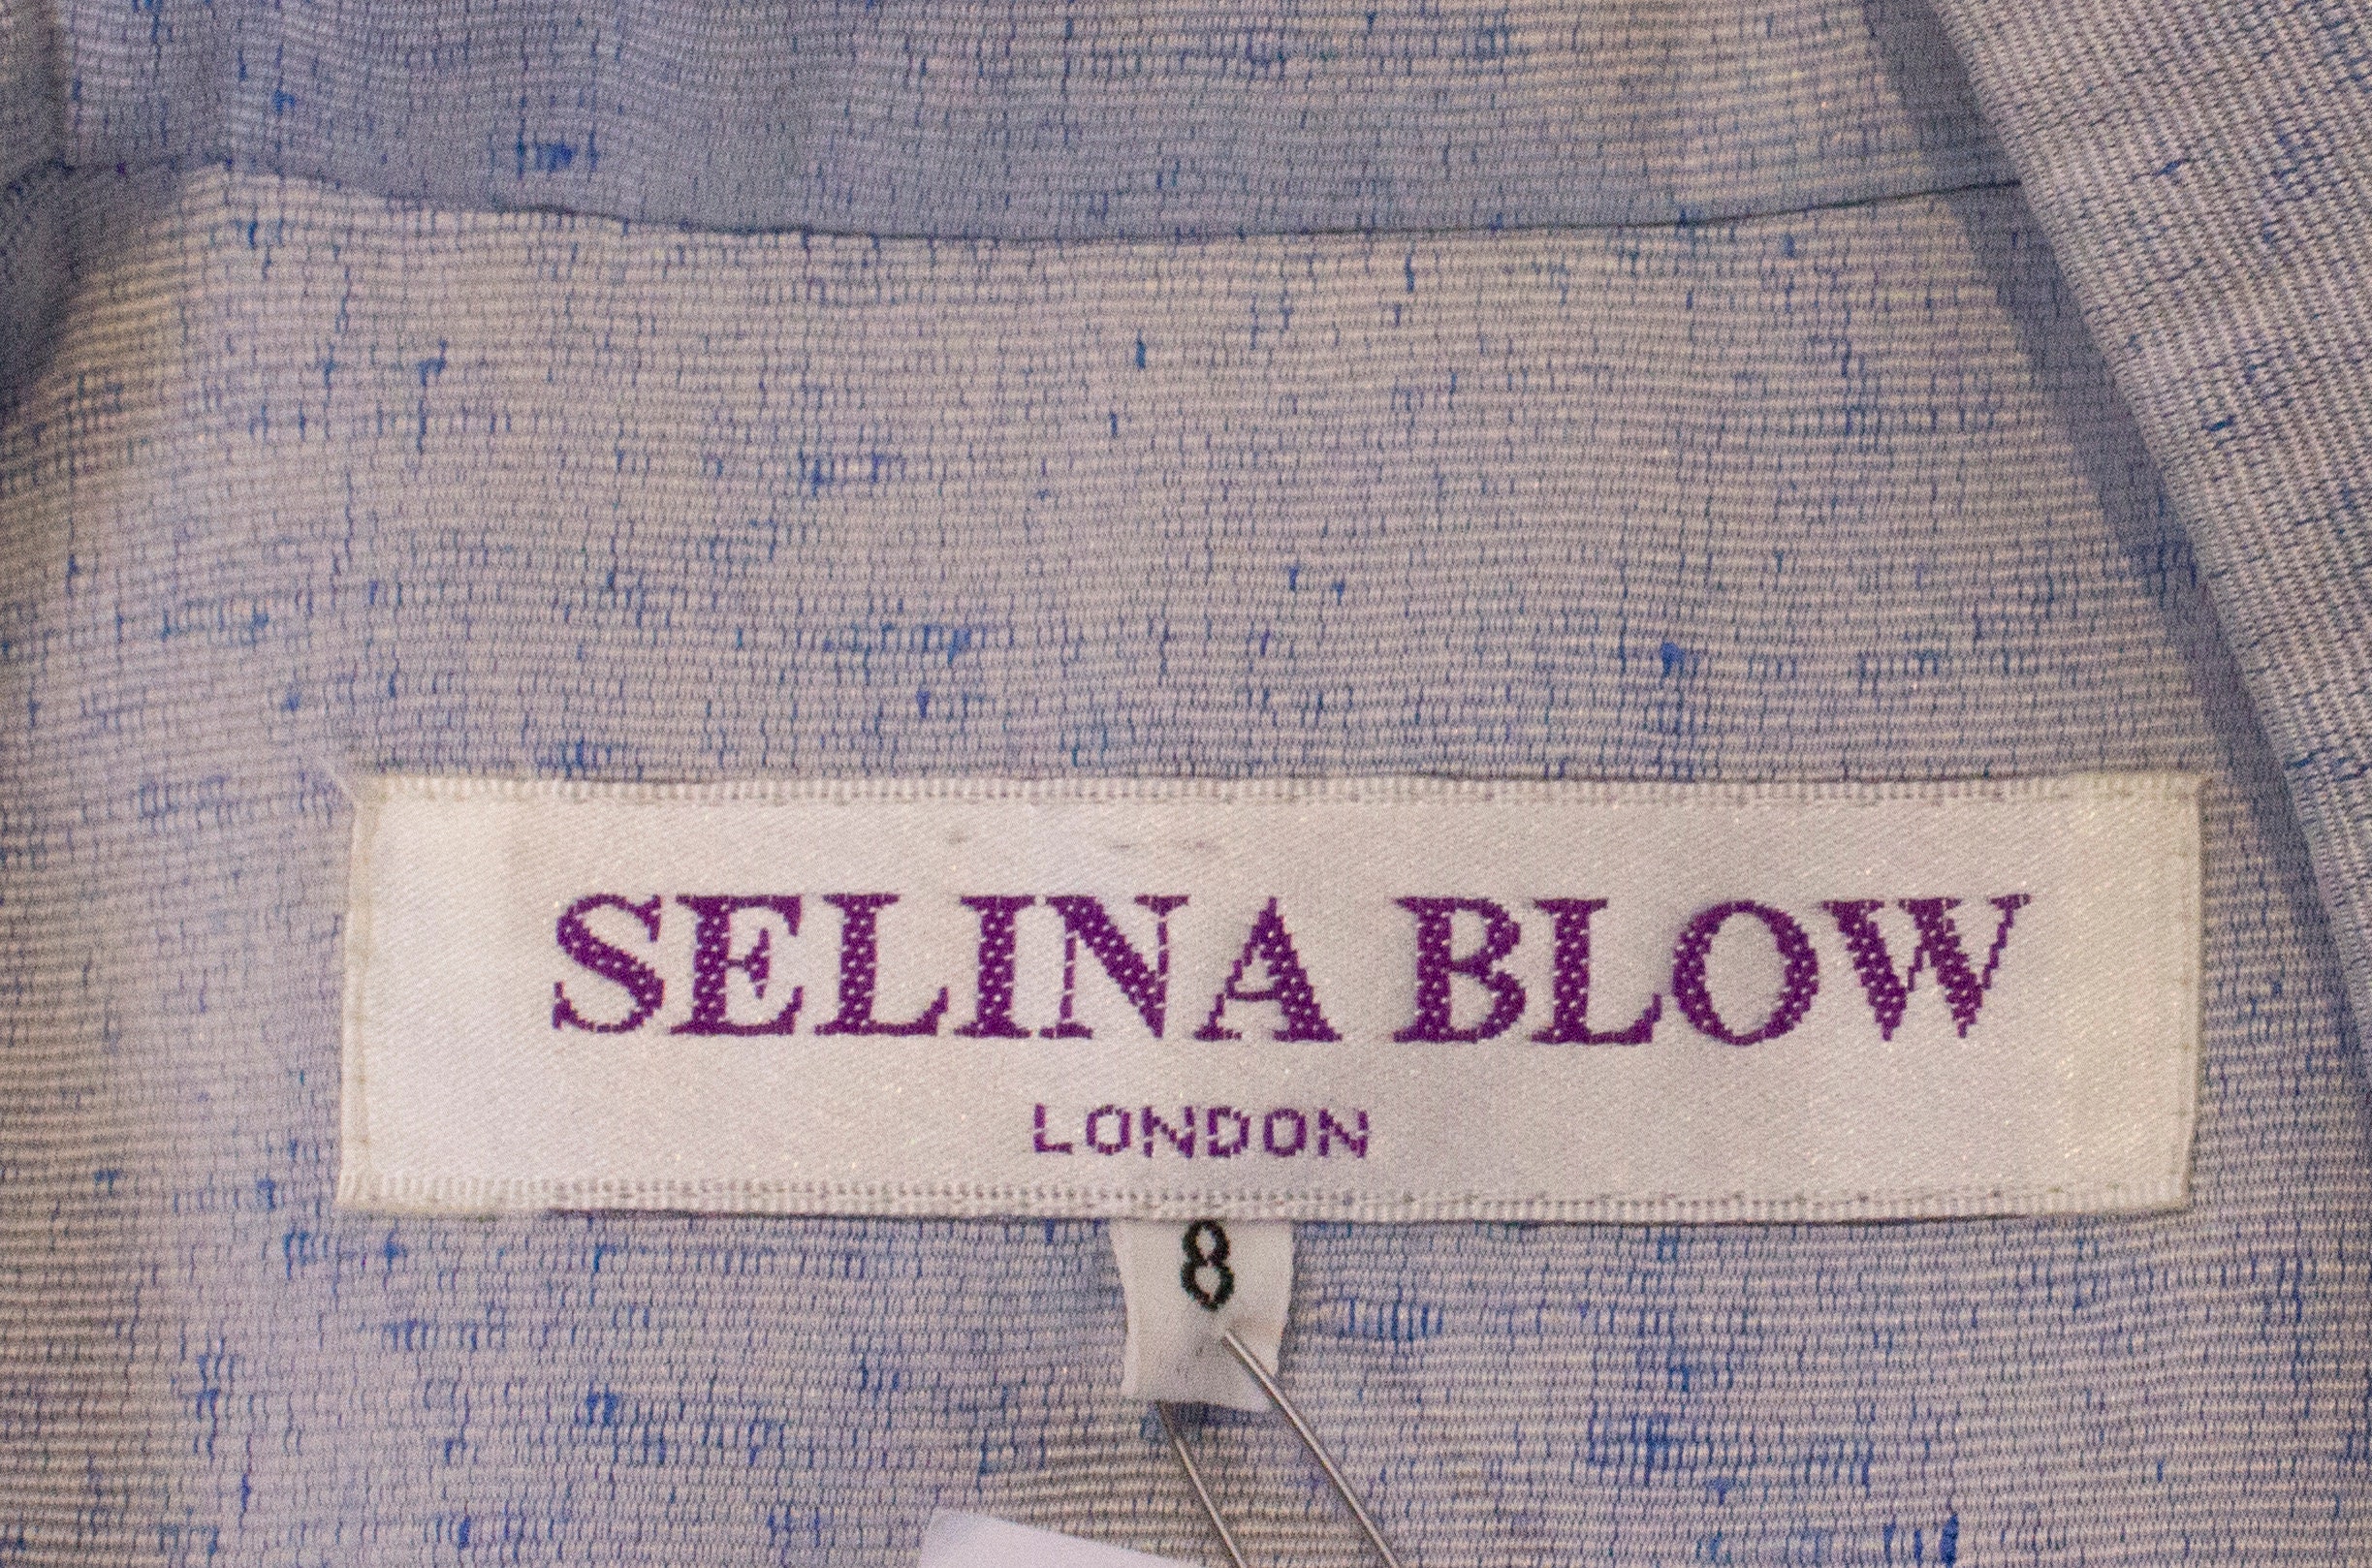 A Vintage 1990s Pale Blue Selina Blow Coat - Etsy